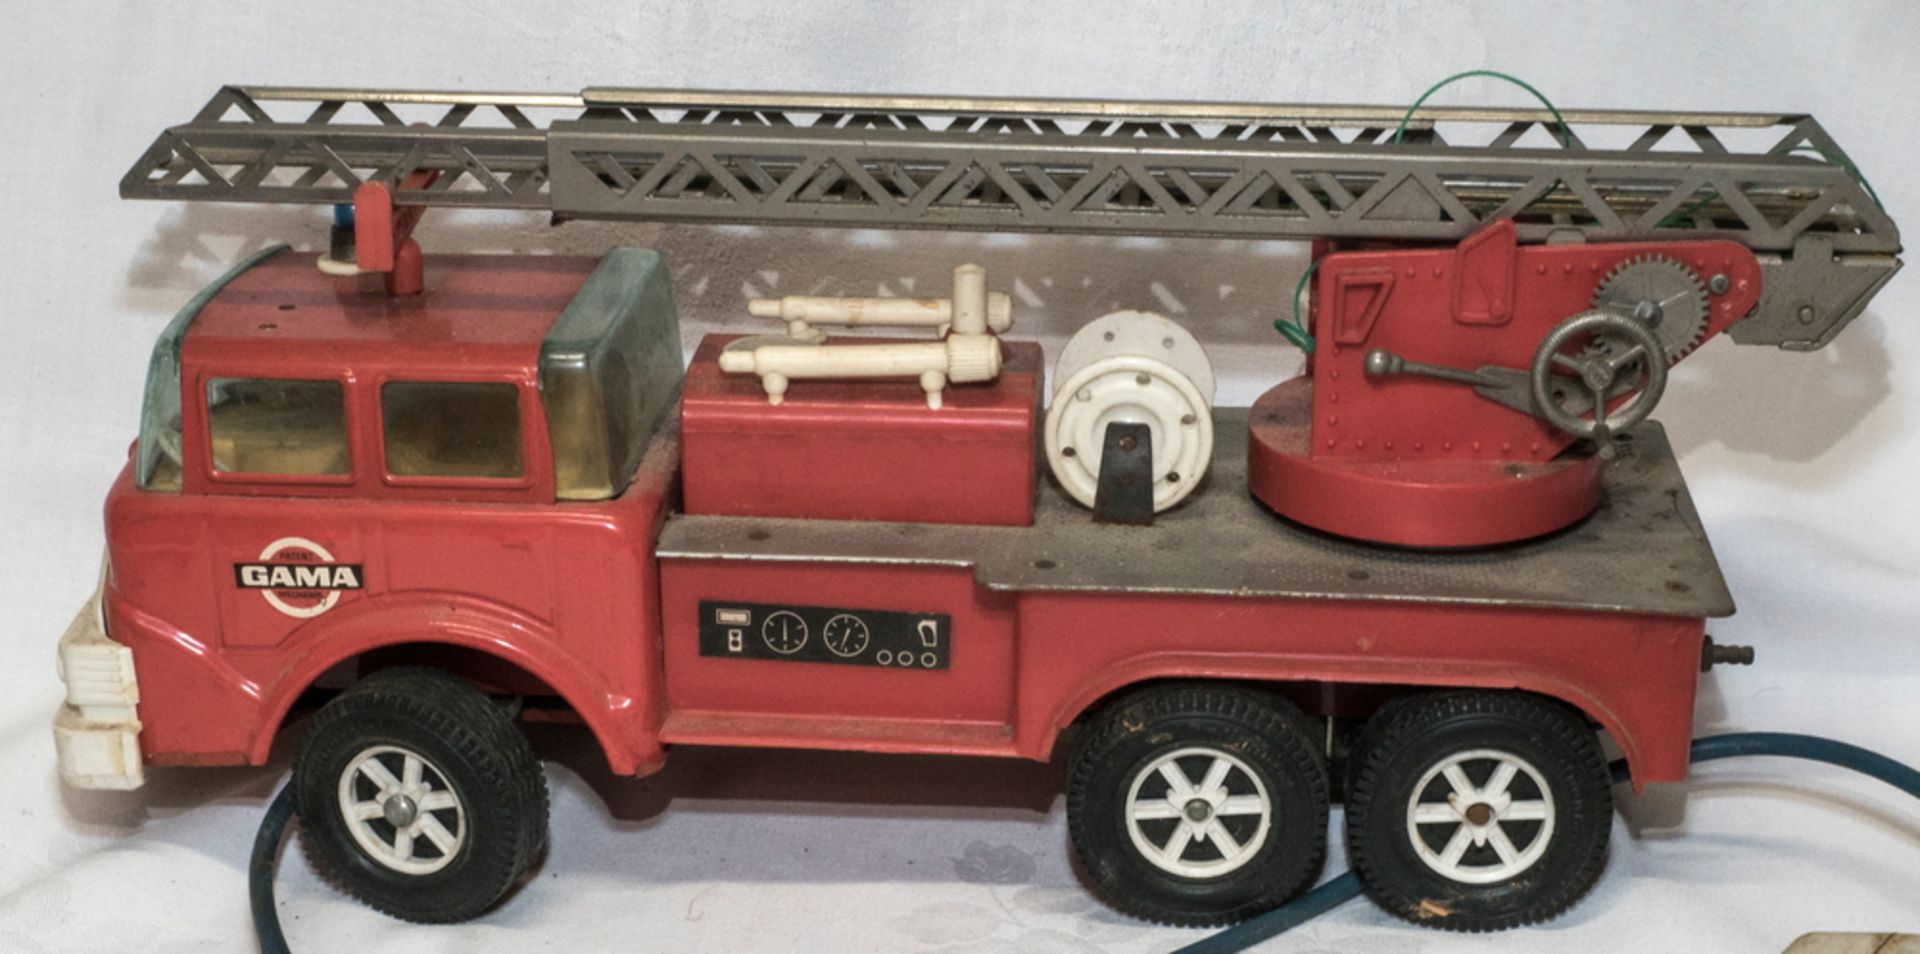 Gama Feuerwehrauto mit Fernbedienung. Nicht komplett. Länge: ca. 32 cm. Funktion nicht geprüft. - Bild 3 aus 5